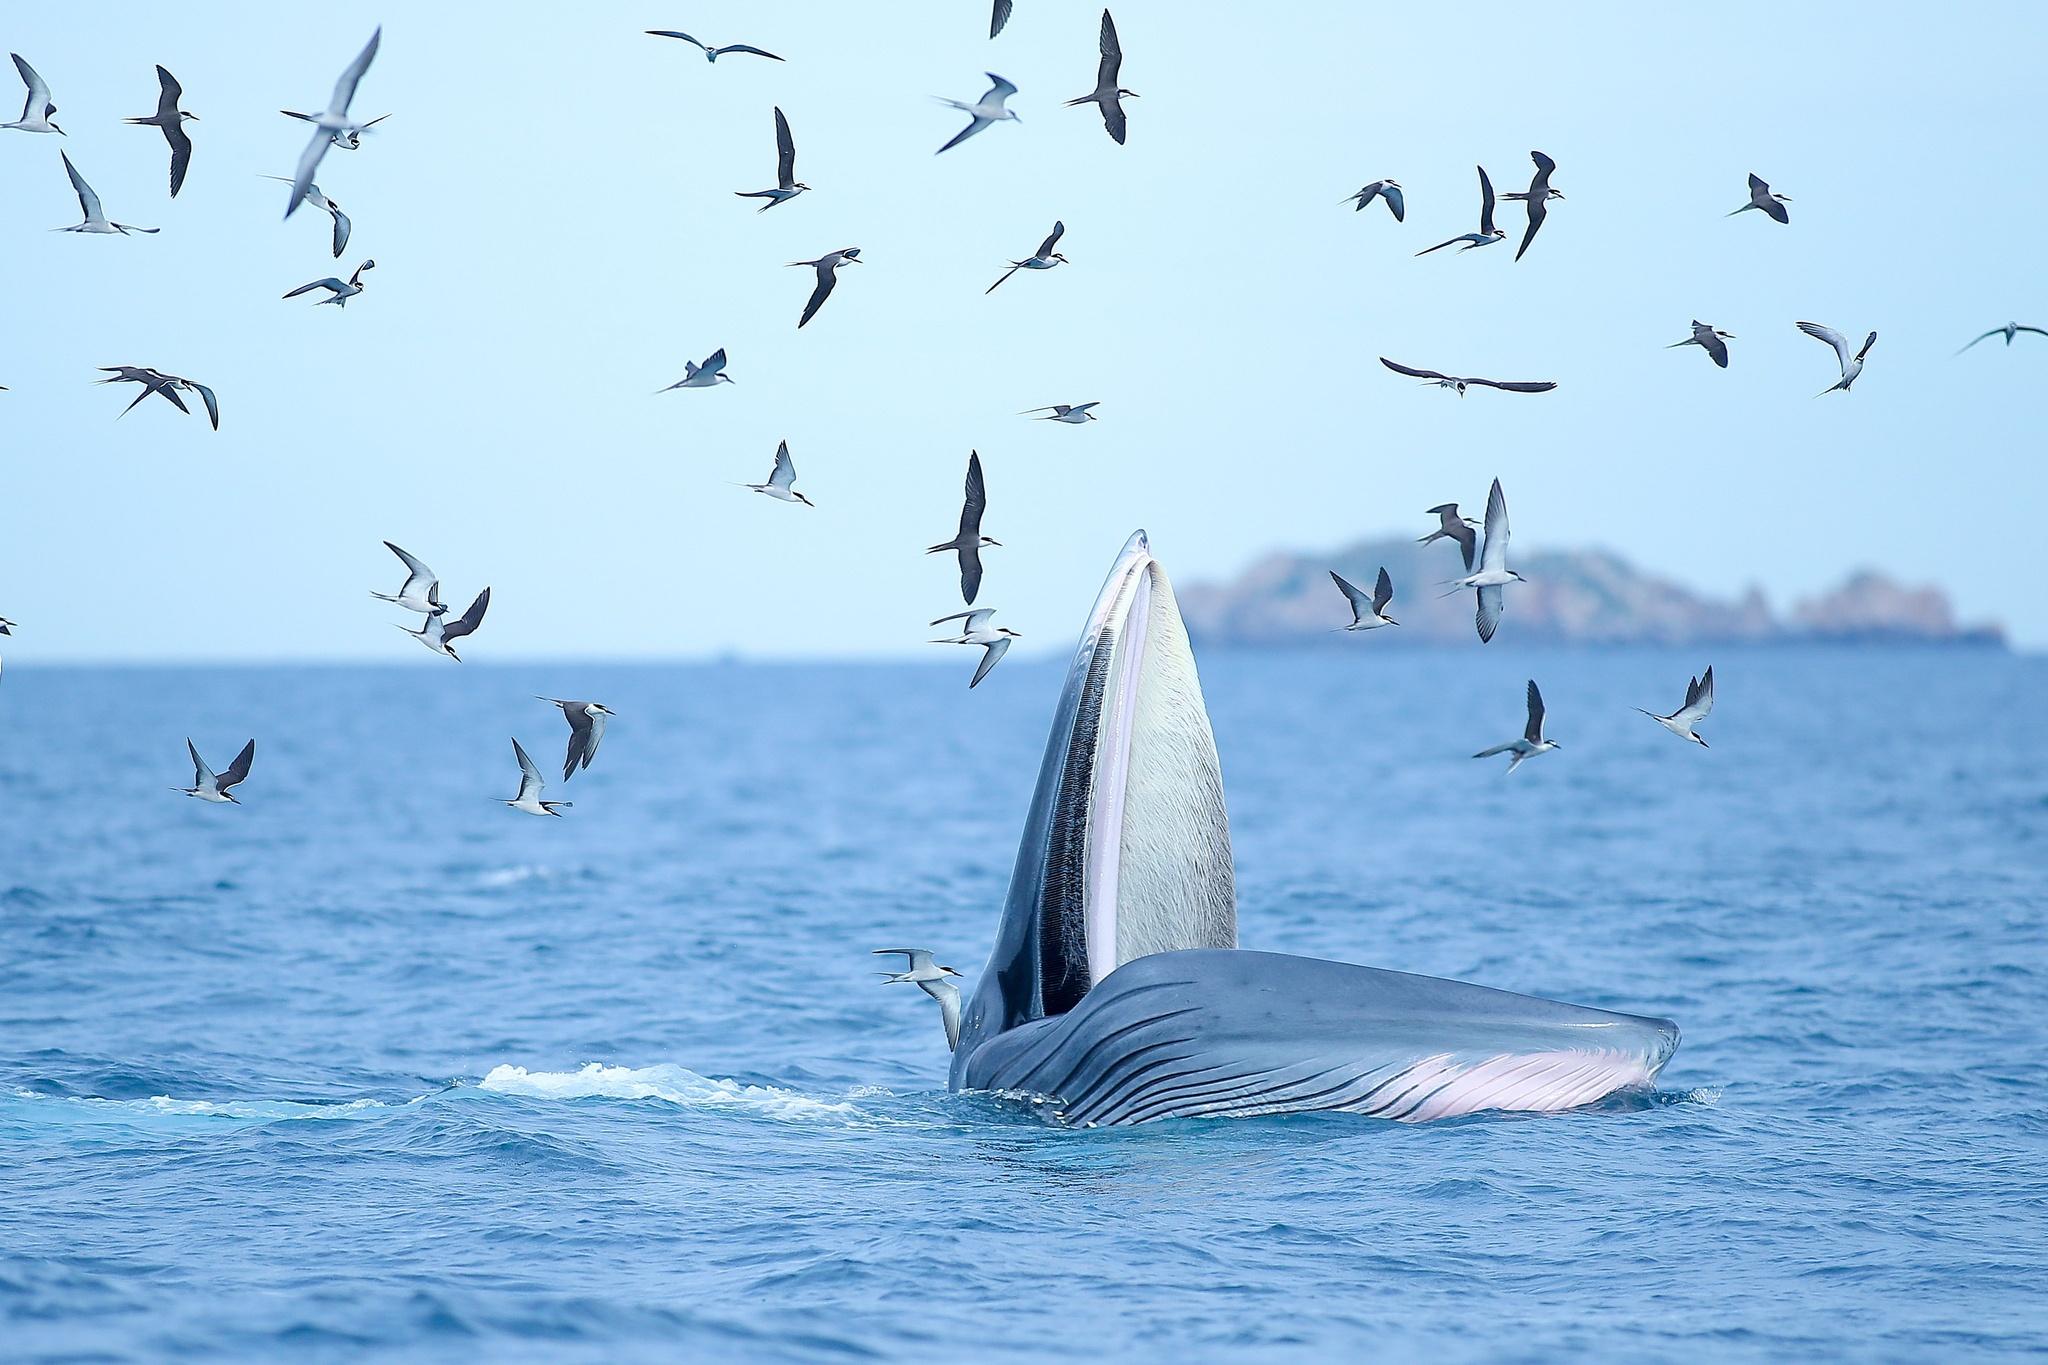 Các nhà khoa học đến Bình Định khảo sát cá voi ở biển Đề Gi - ảnh 1